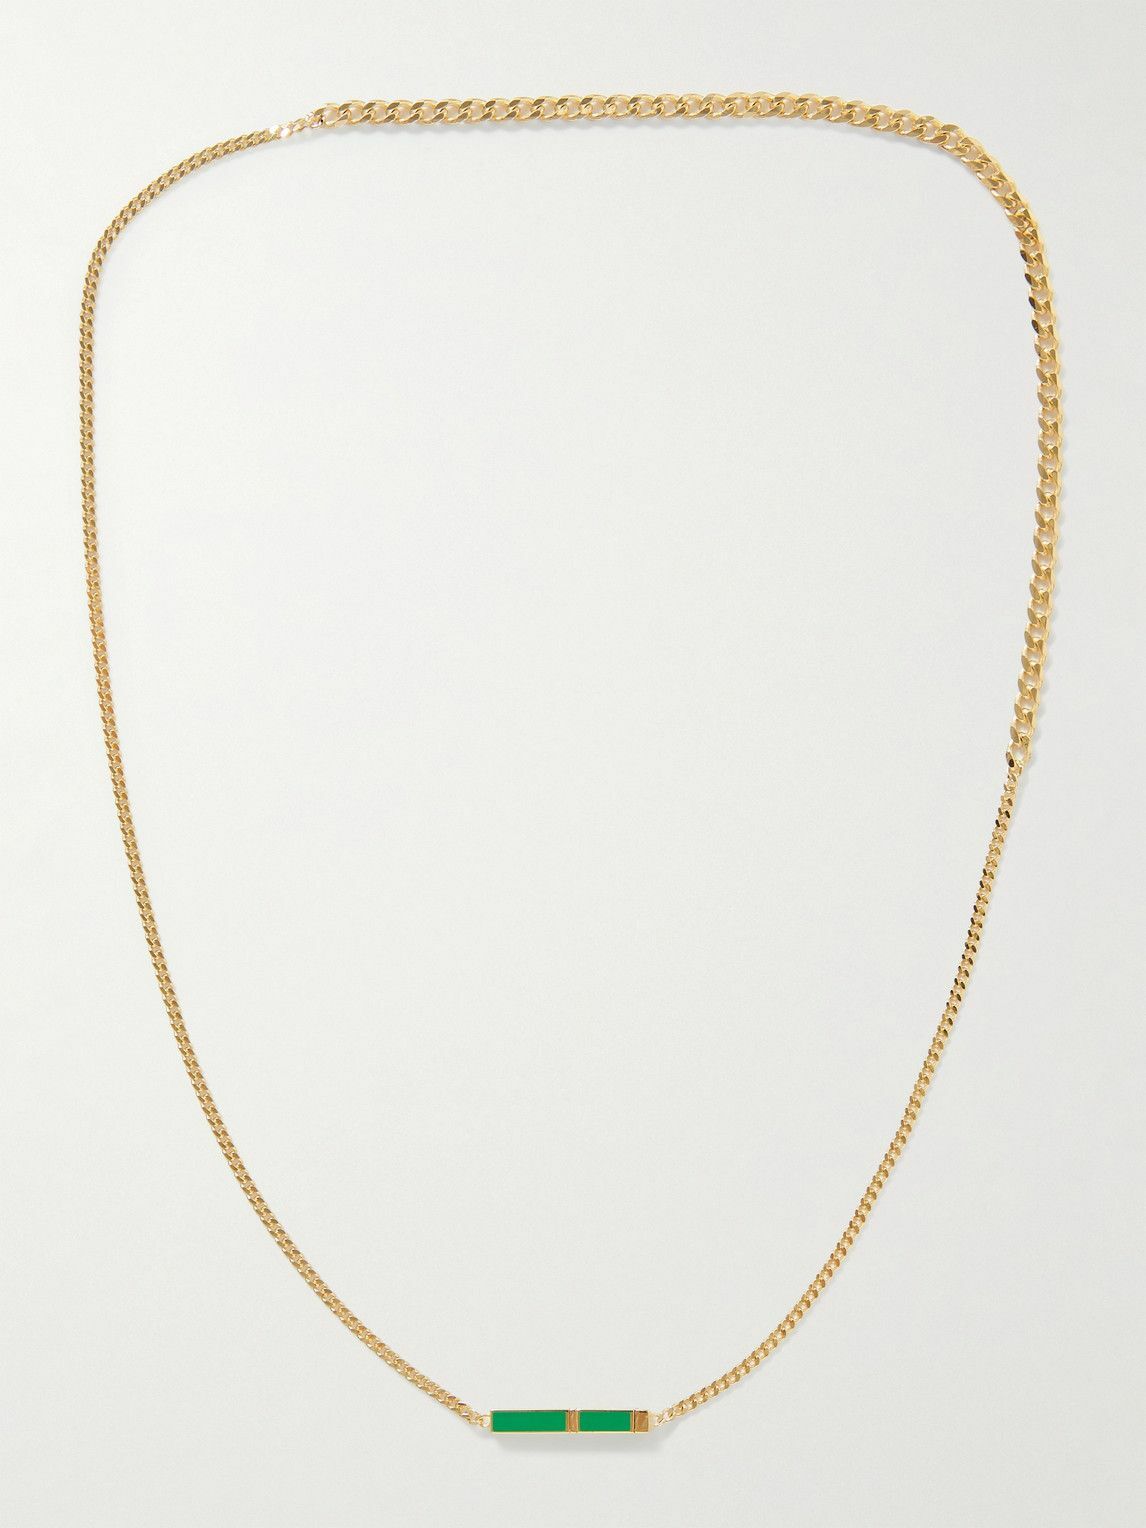 Bottega Veneta - Gold-Plated and Enamel Necklace